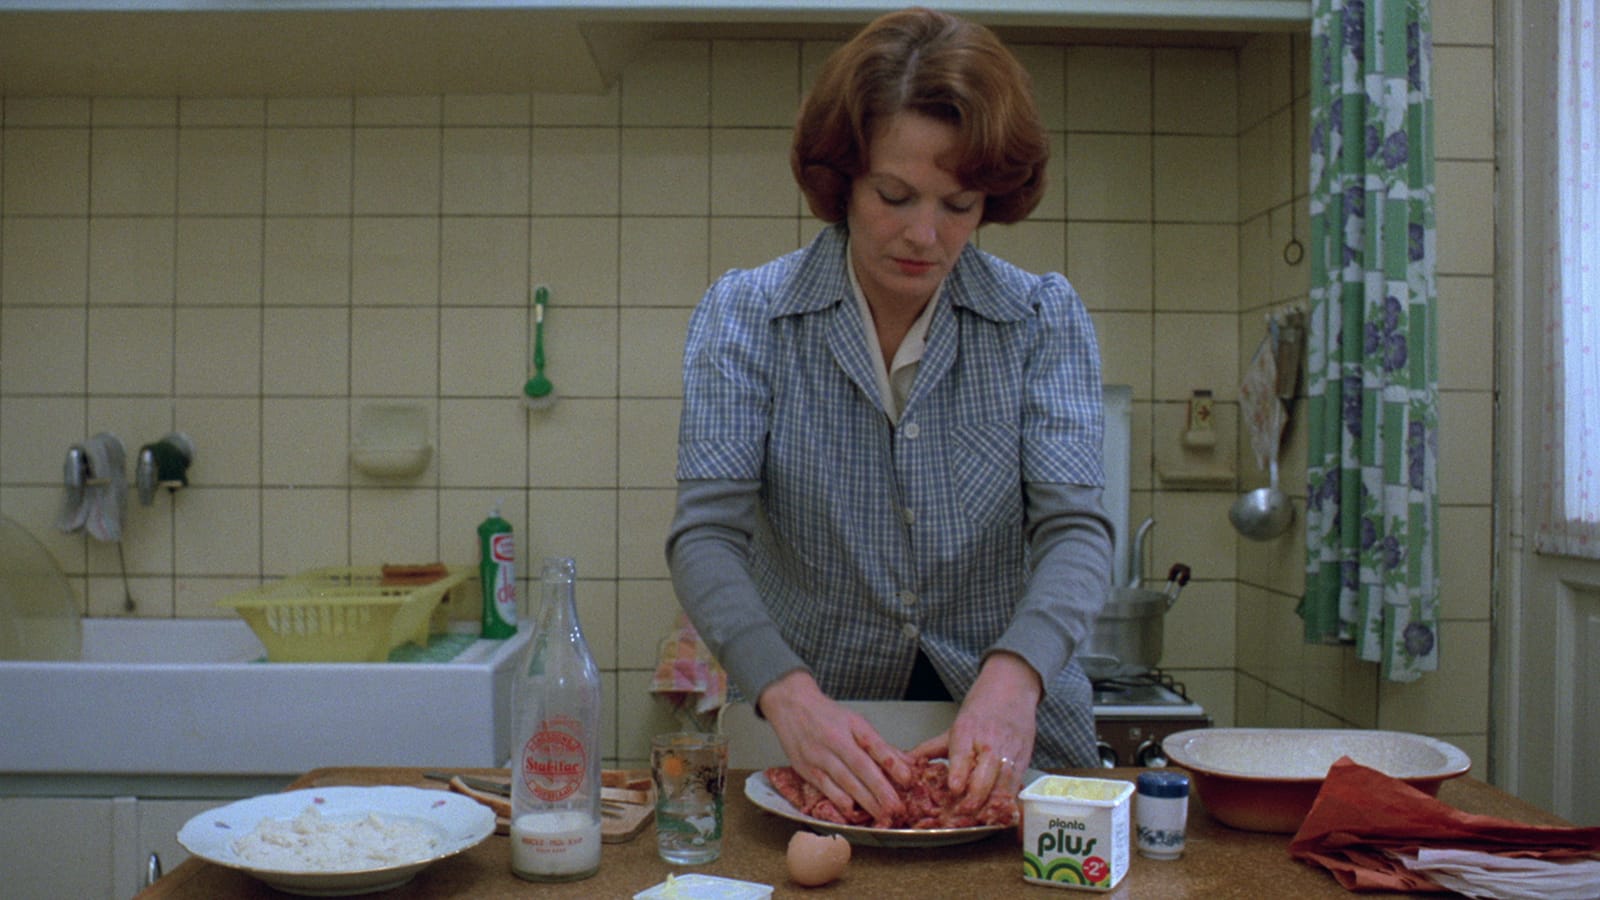 Jeanne Dielman in kitchen, folding meat